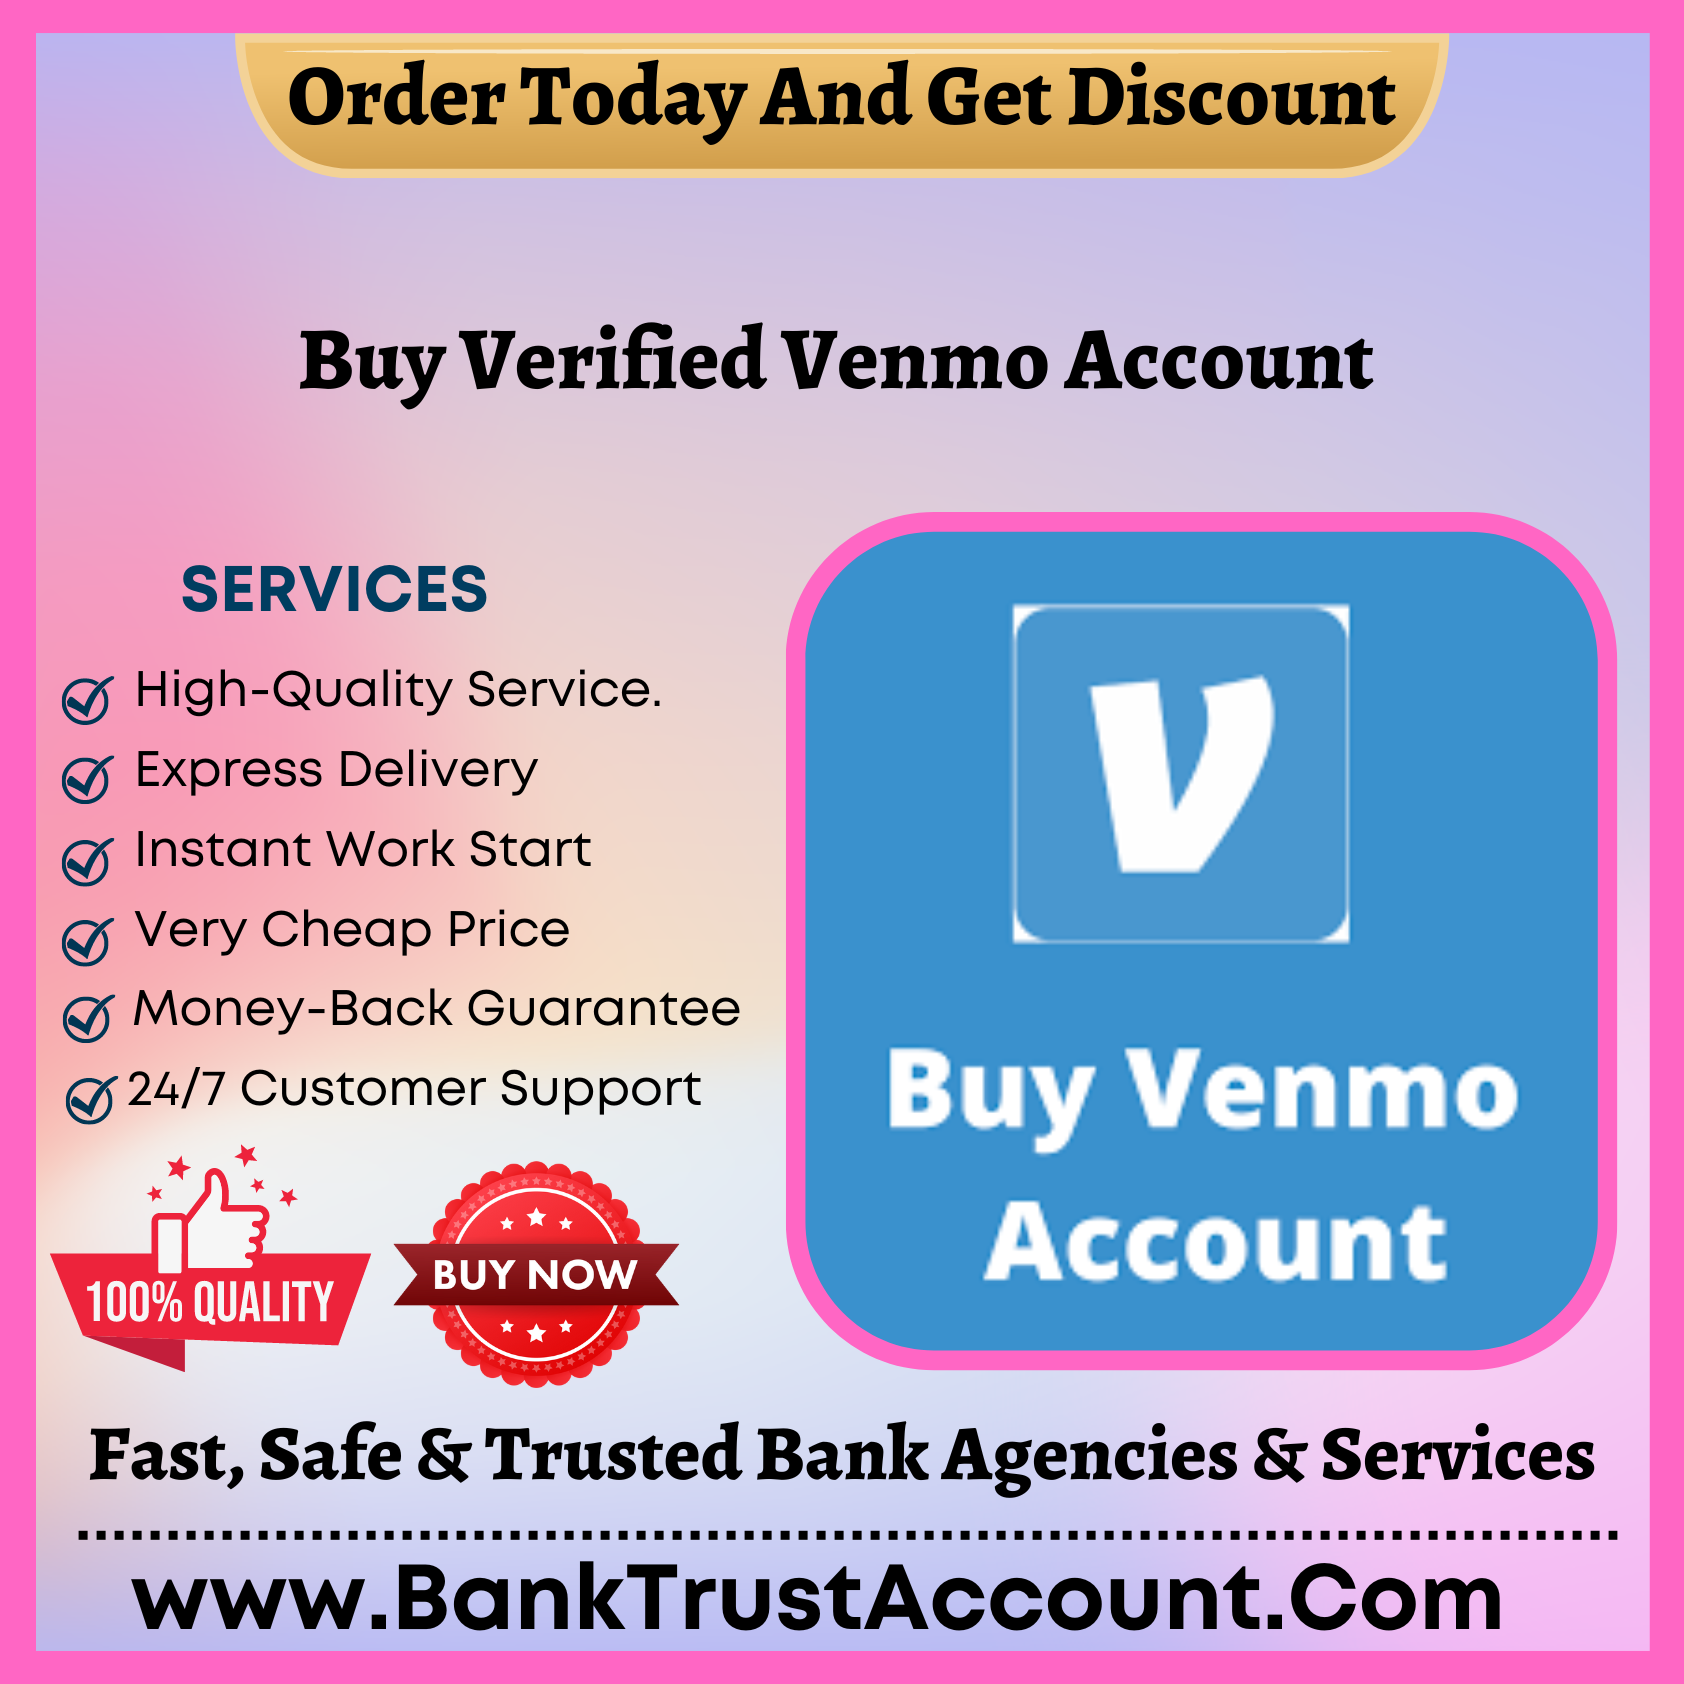 Buy Verified Venmo Account - BankTrustAccount